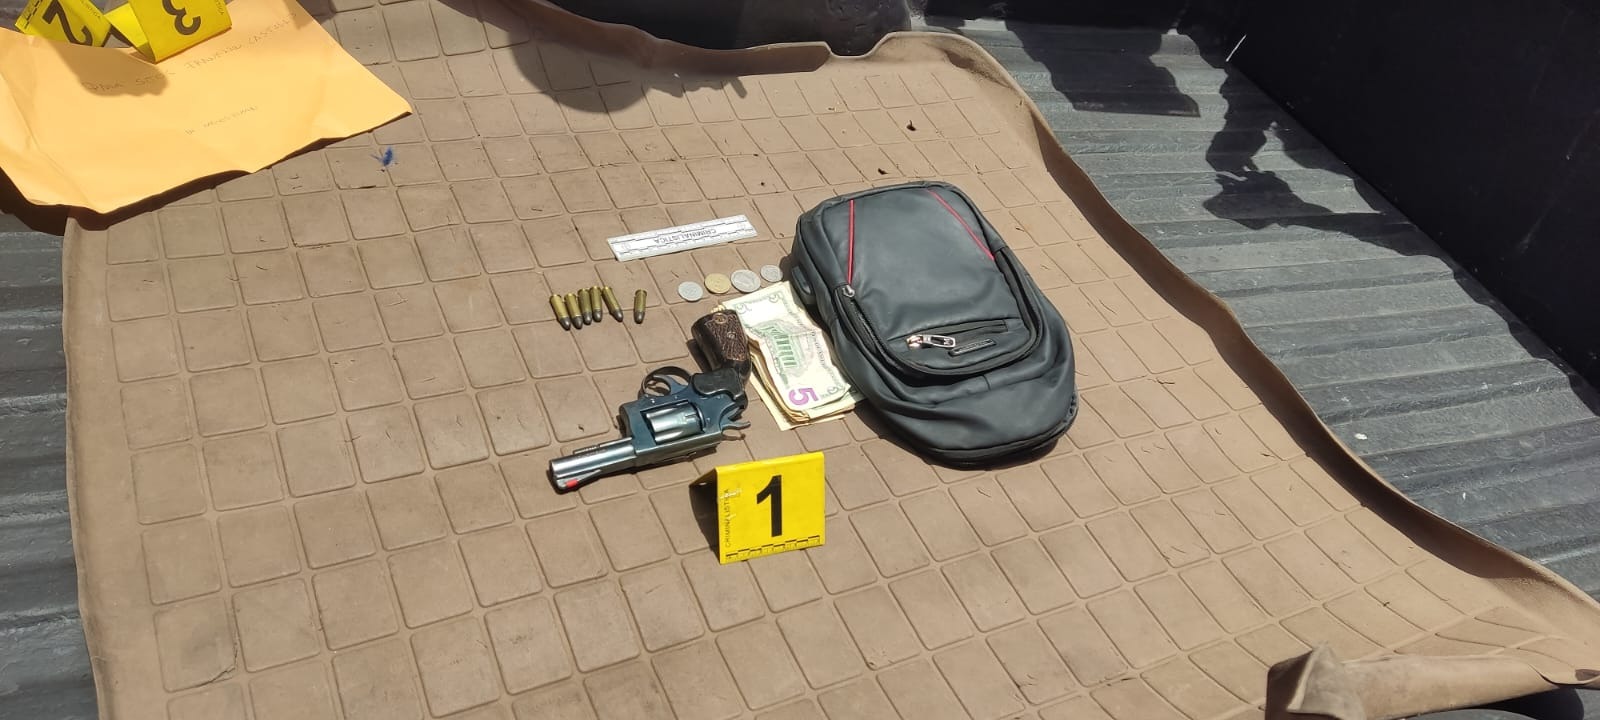 El revólver fue encontrado en el carro del involucrado que atacó al mecánico en Pelileo.